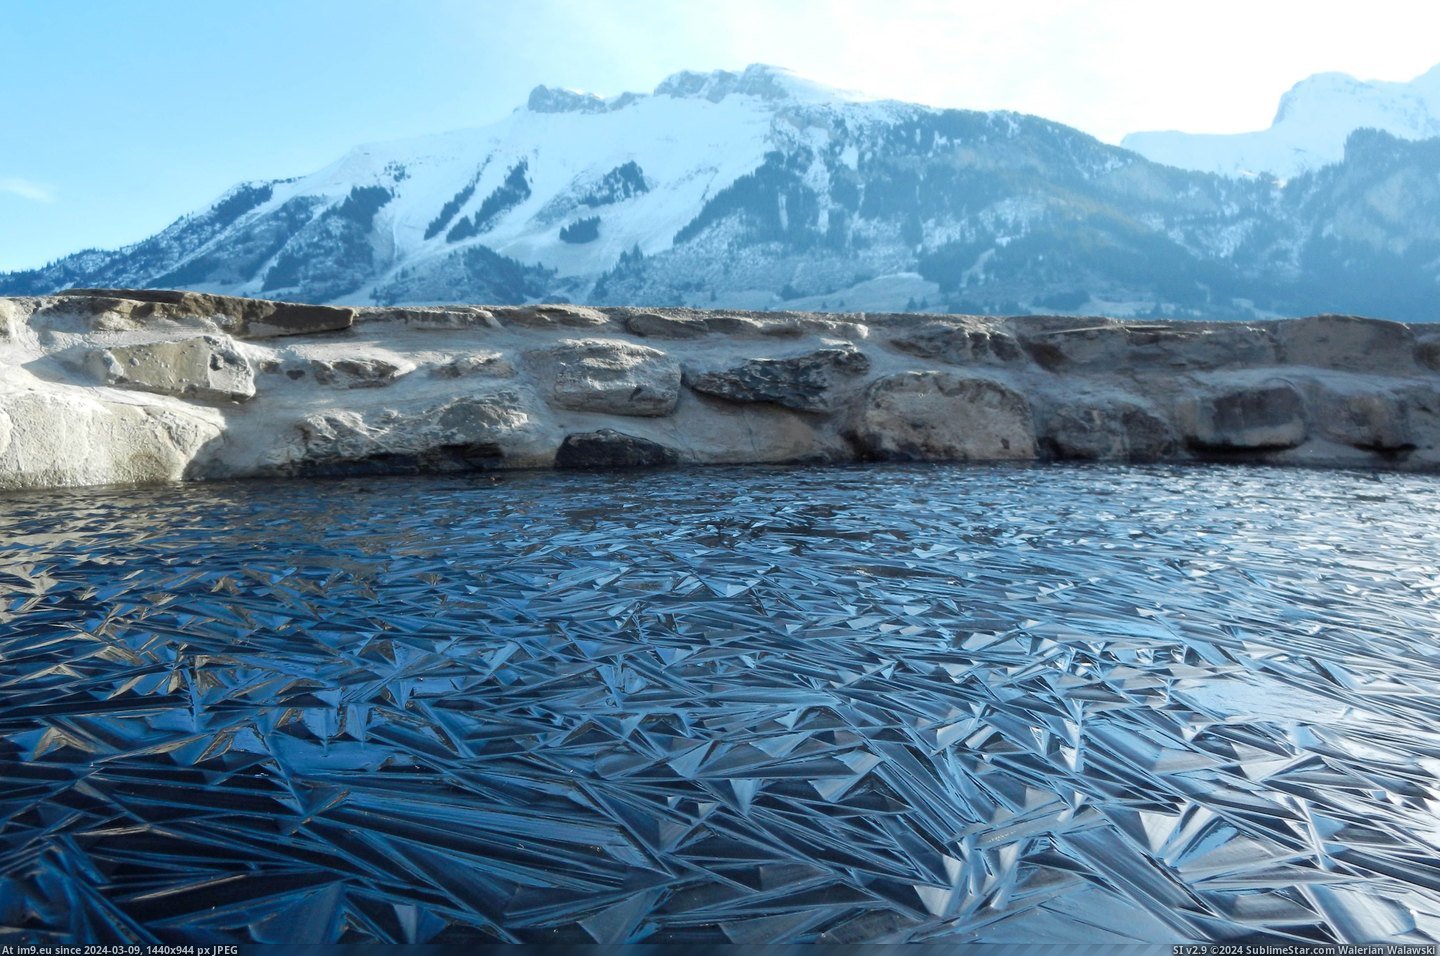 #Frozen #Pond #Switzerland [Pics] Frozen pond in Switzerland Pic. (Bild von album My r/PICS favs))